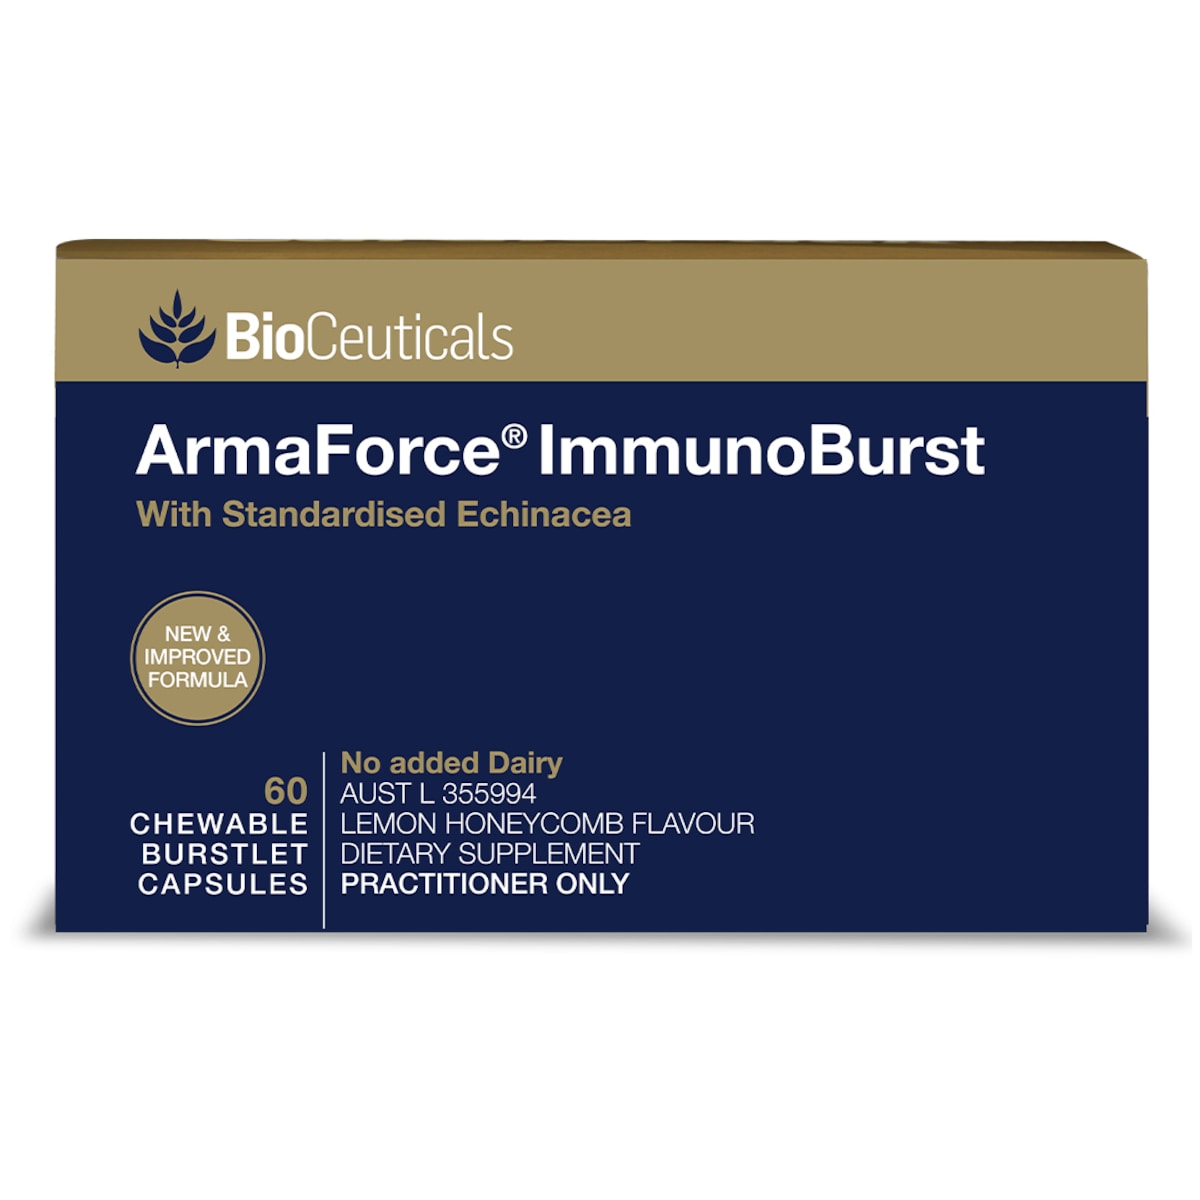 BioCeuticals ArmaForce ImmunoBurst 60 Chewable Burstlet Capsules